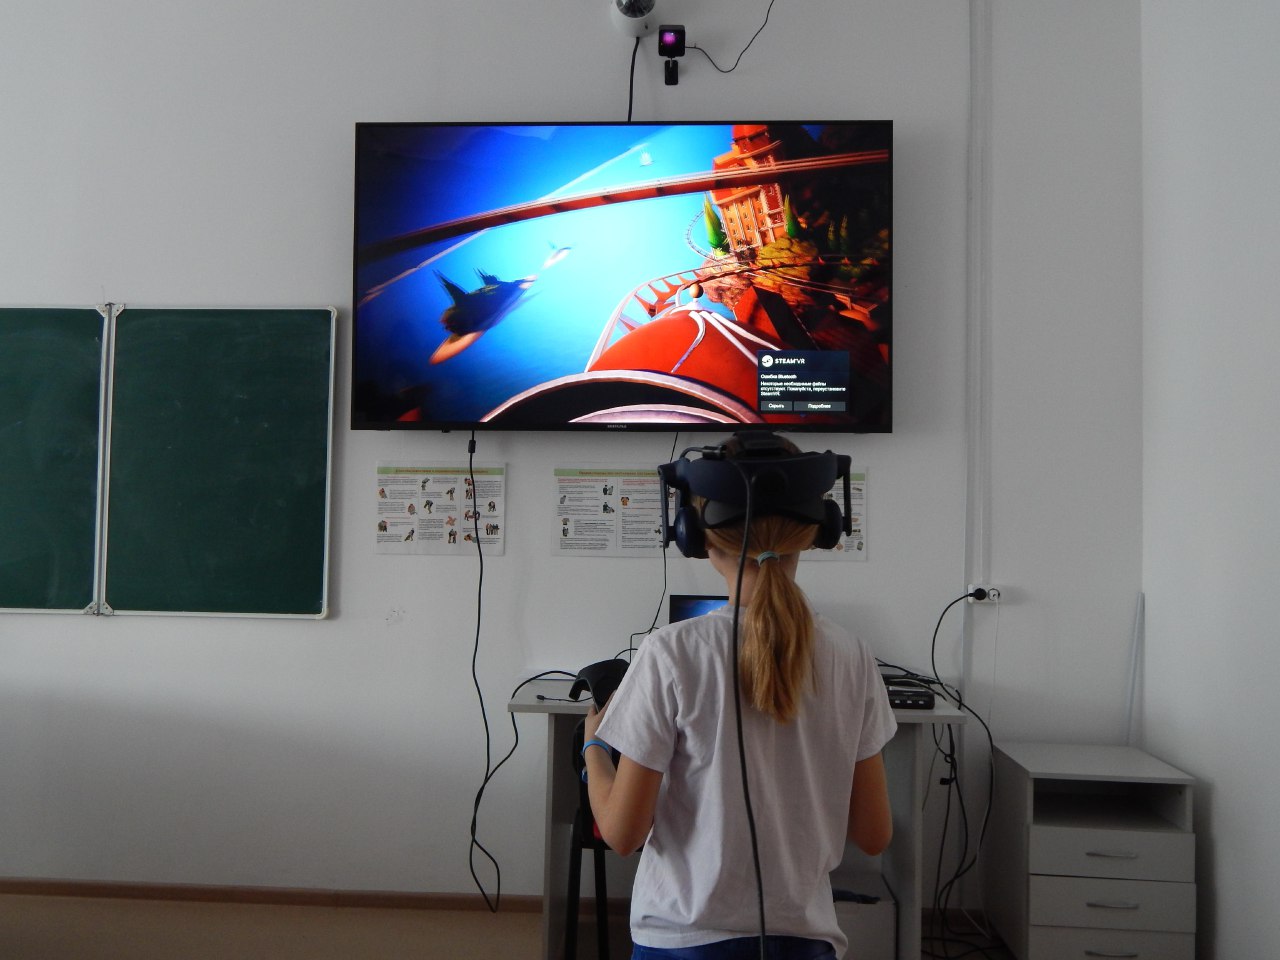 Спорт на каникулах и виртуальная реальность!.